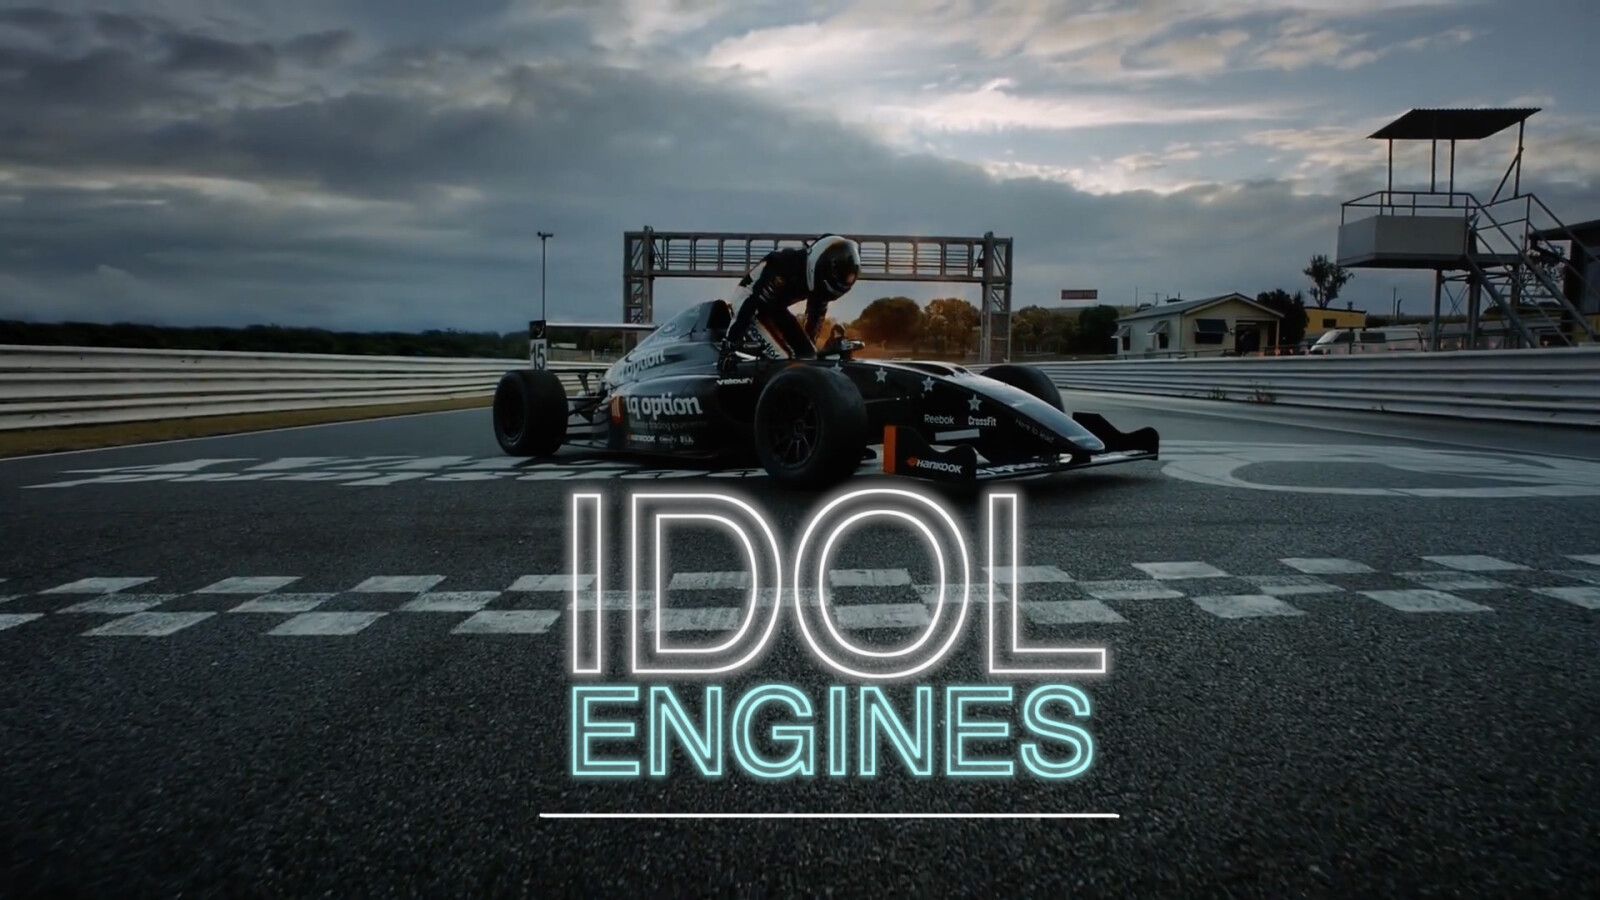 Idol Engines